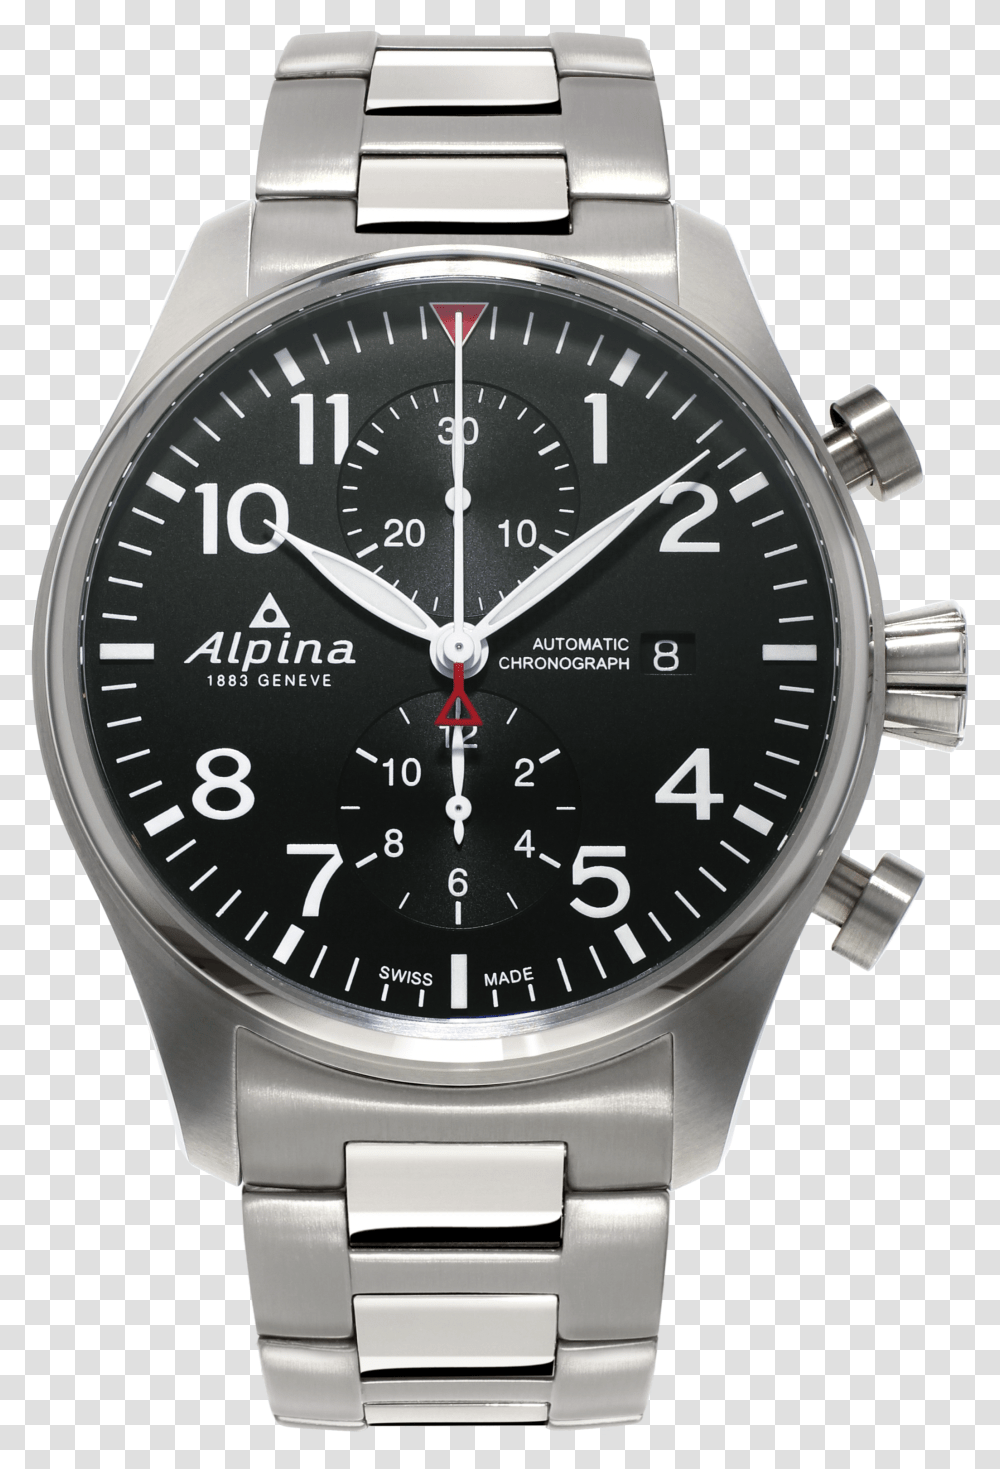 Alpina Watch Transparent Png